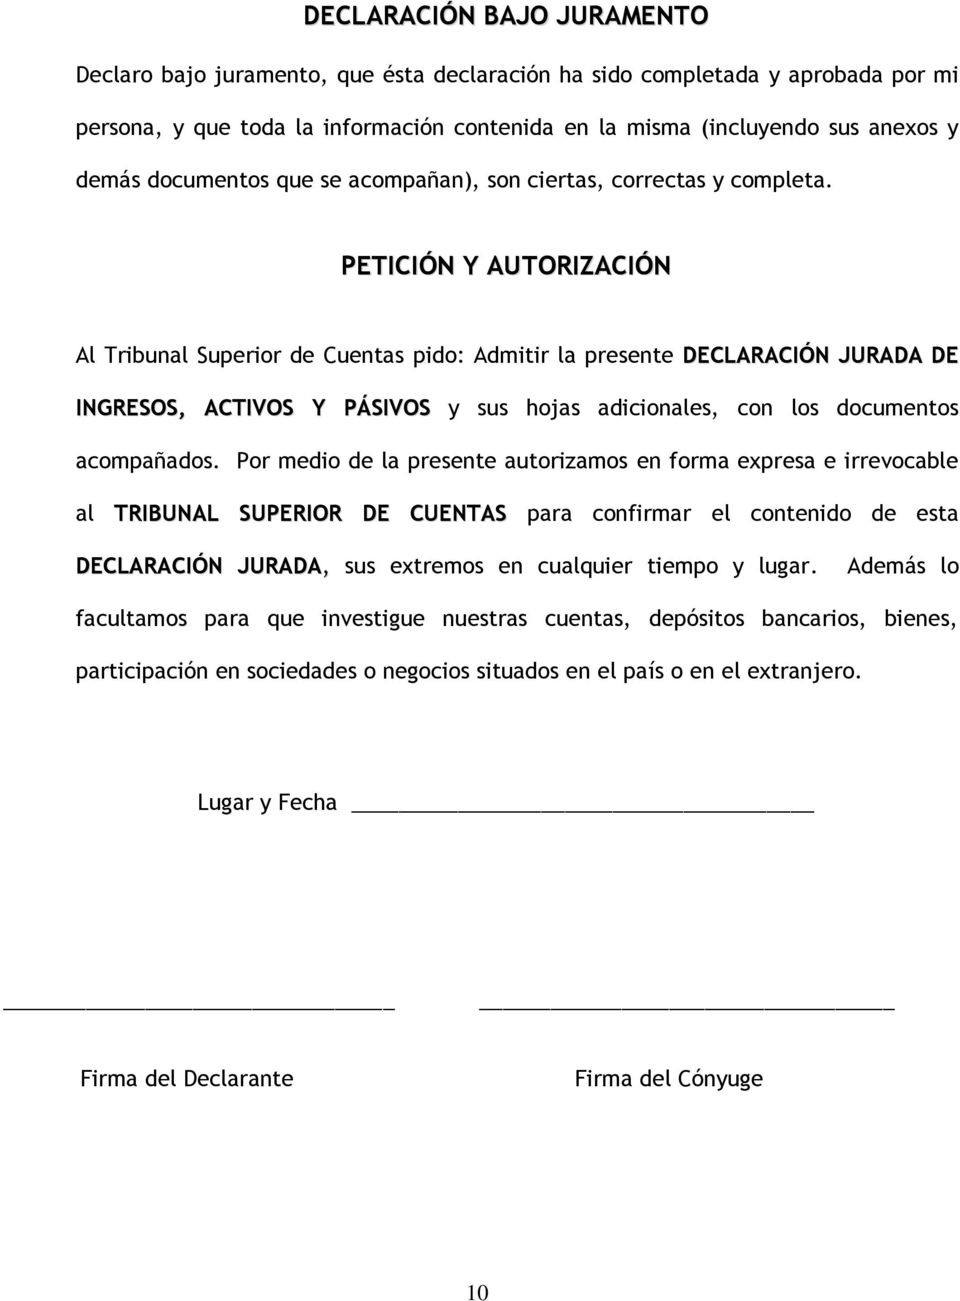 DECLARACIÓN JURADA DE INGRESOS, ACTIVOS Y PASIVOS - PDF Free Download